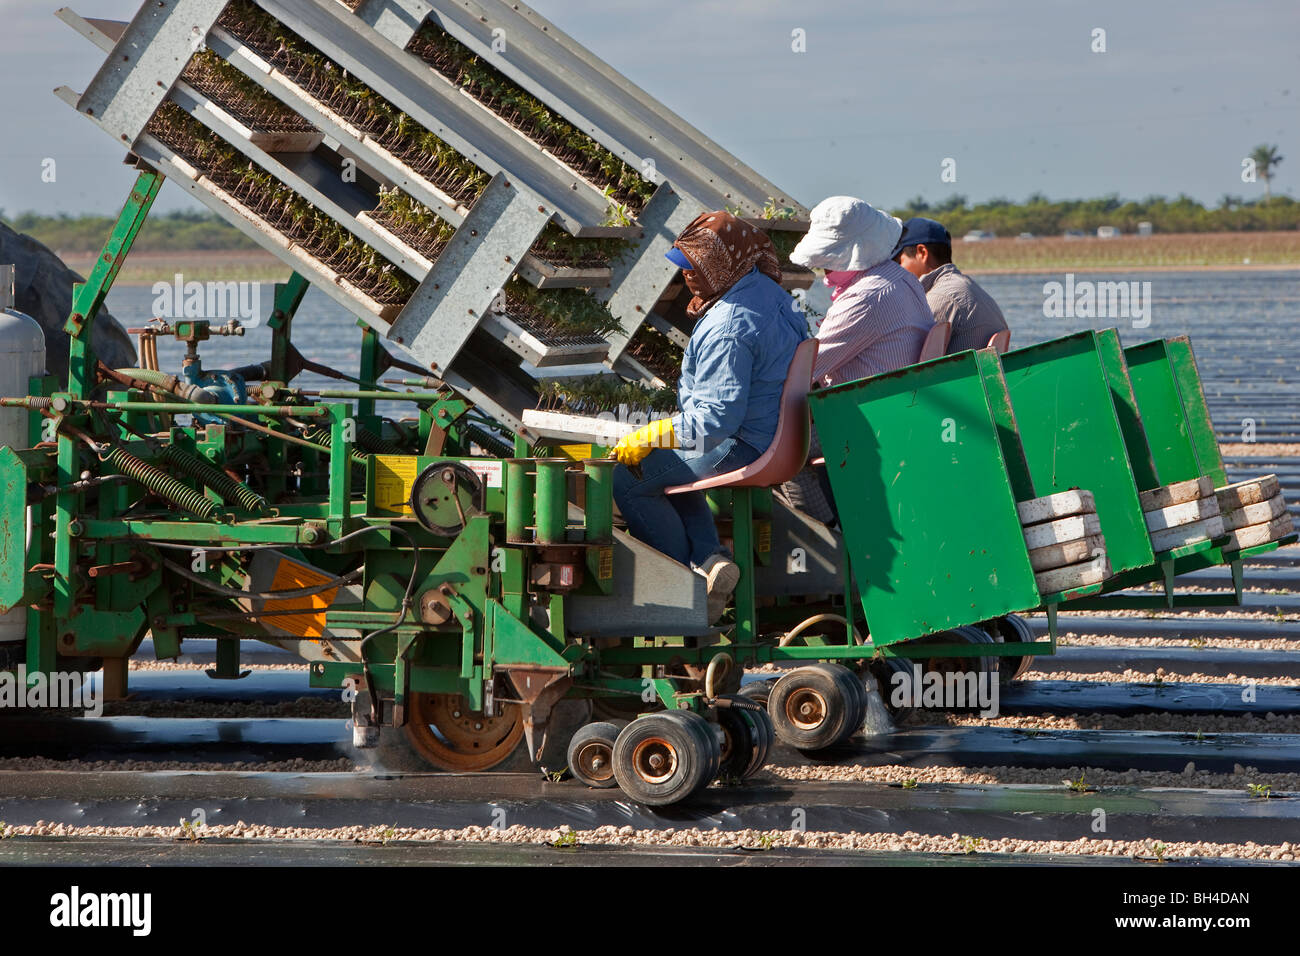 Bohnen, Arbeitsmigranten, Südflorida Landwirtschaft Kommissionierung Stockfoto